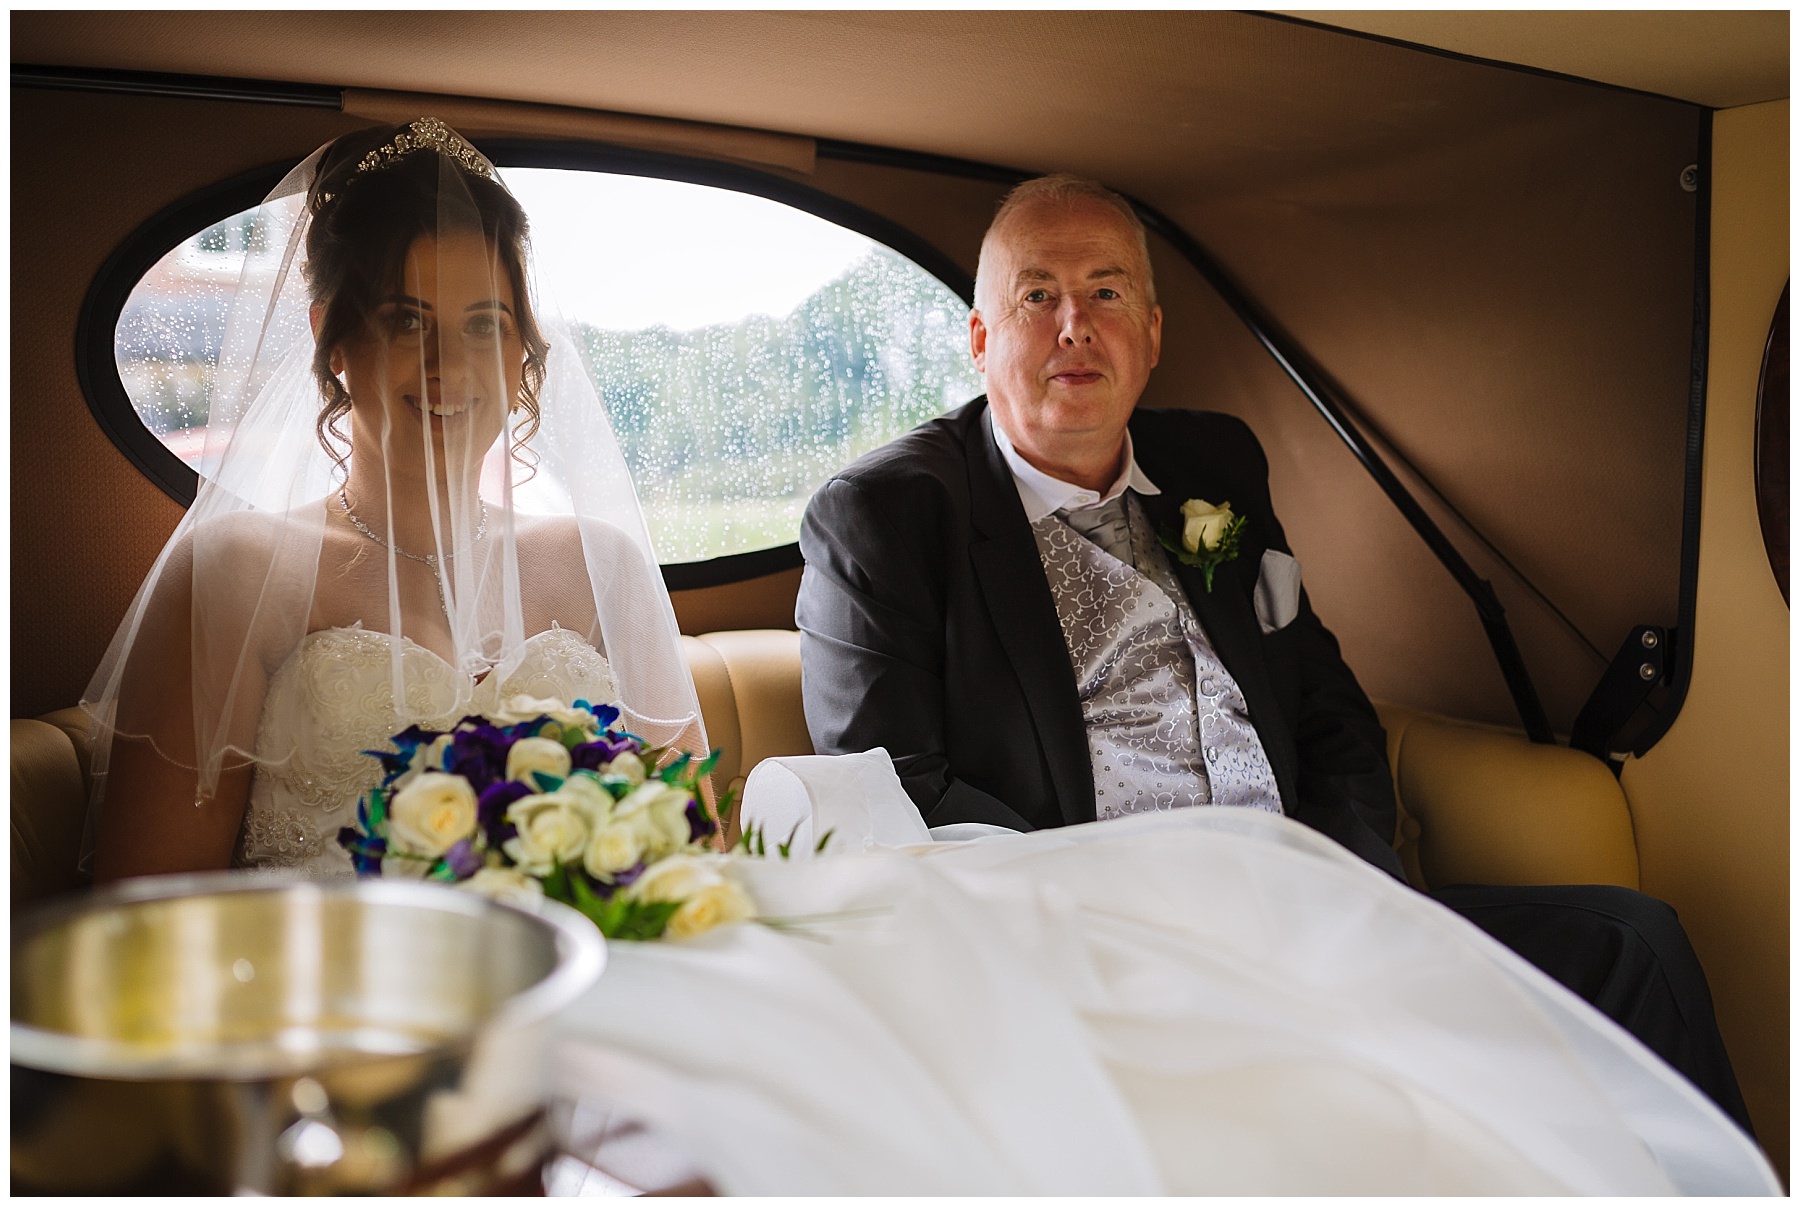 Bride and dad arrive in wedding car